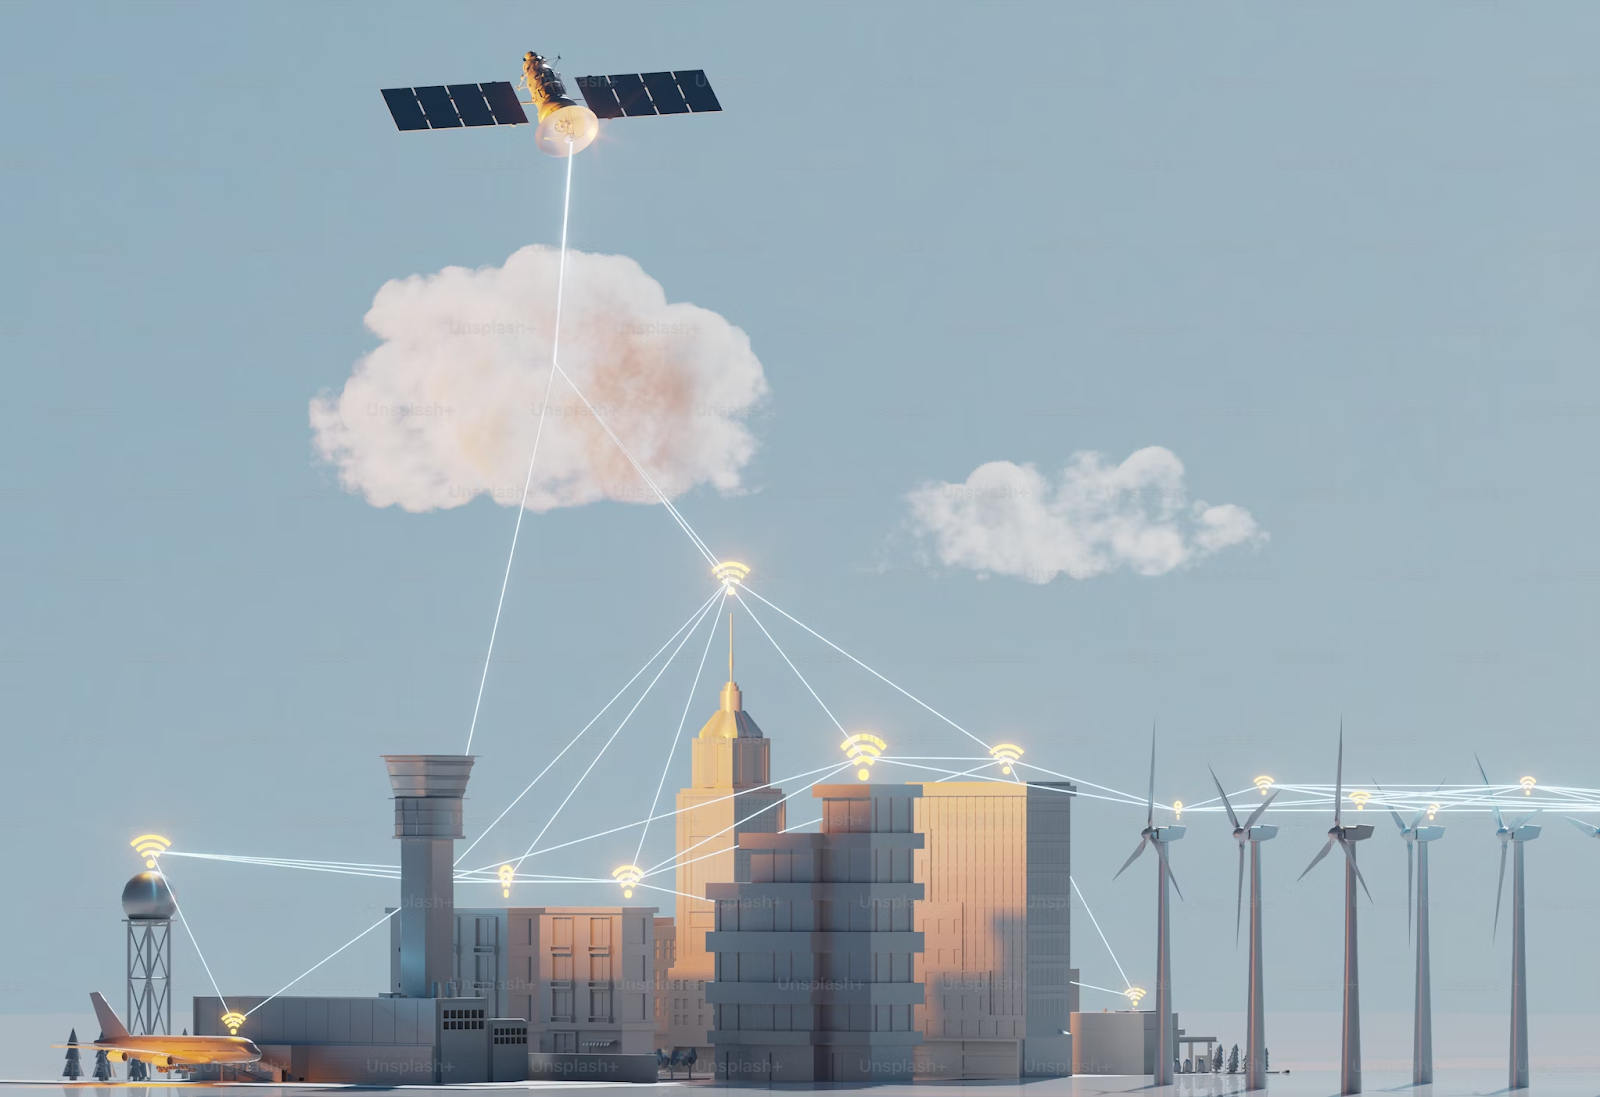 cidade inteligente: ilustração de redes de wi-fi conectados a um satélite